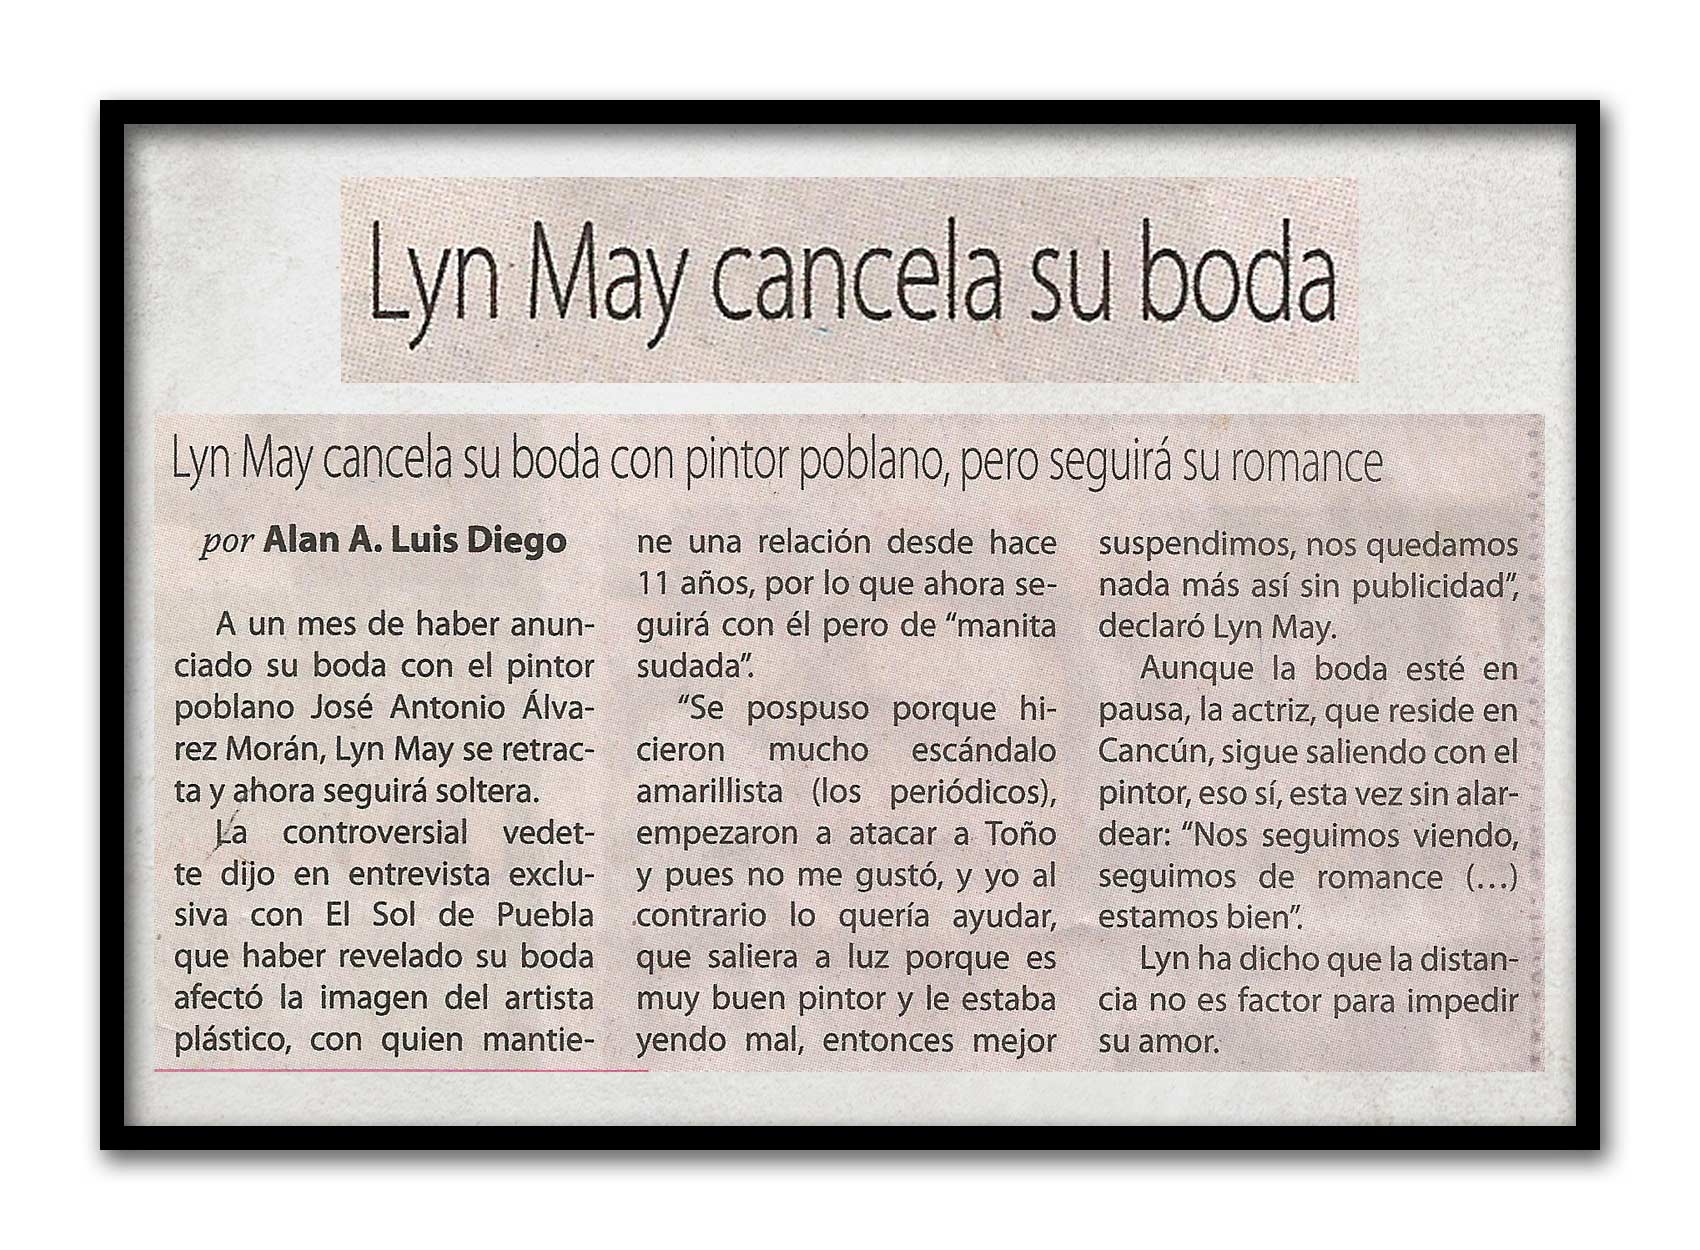 34-Boda-Cancelada-LynMay